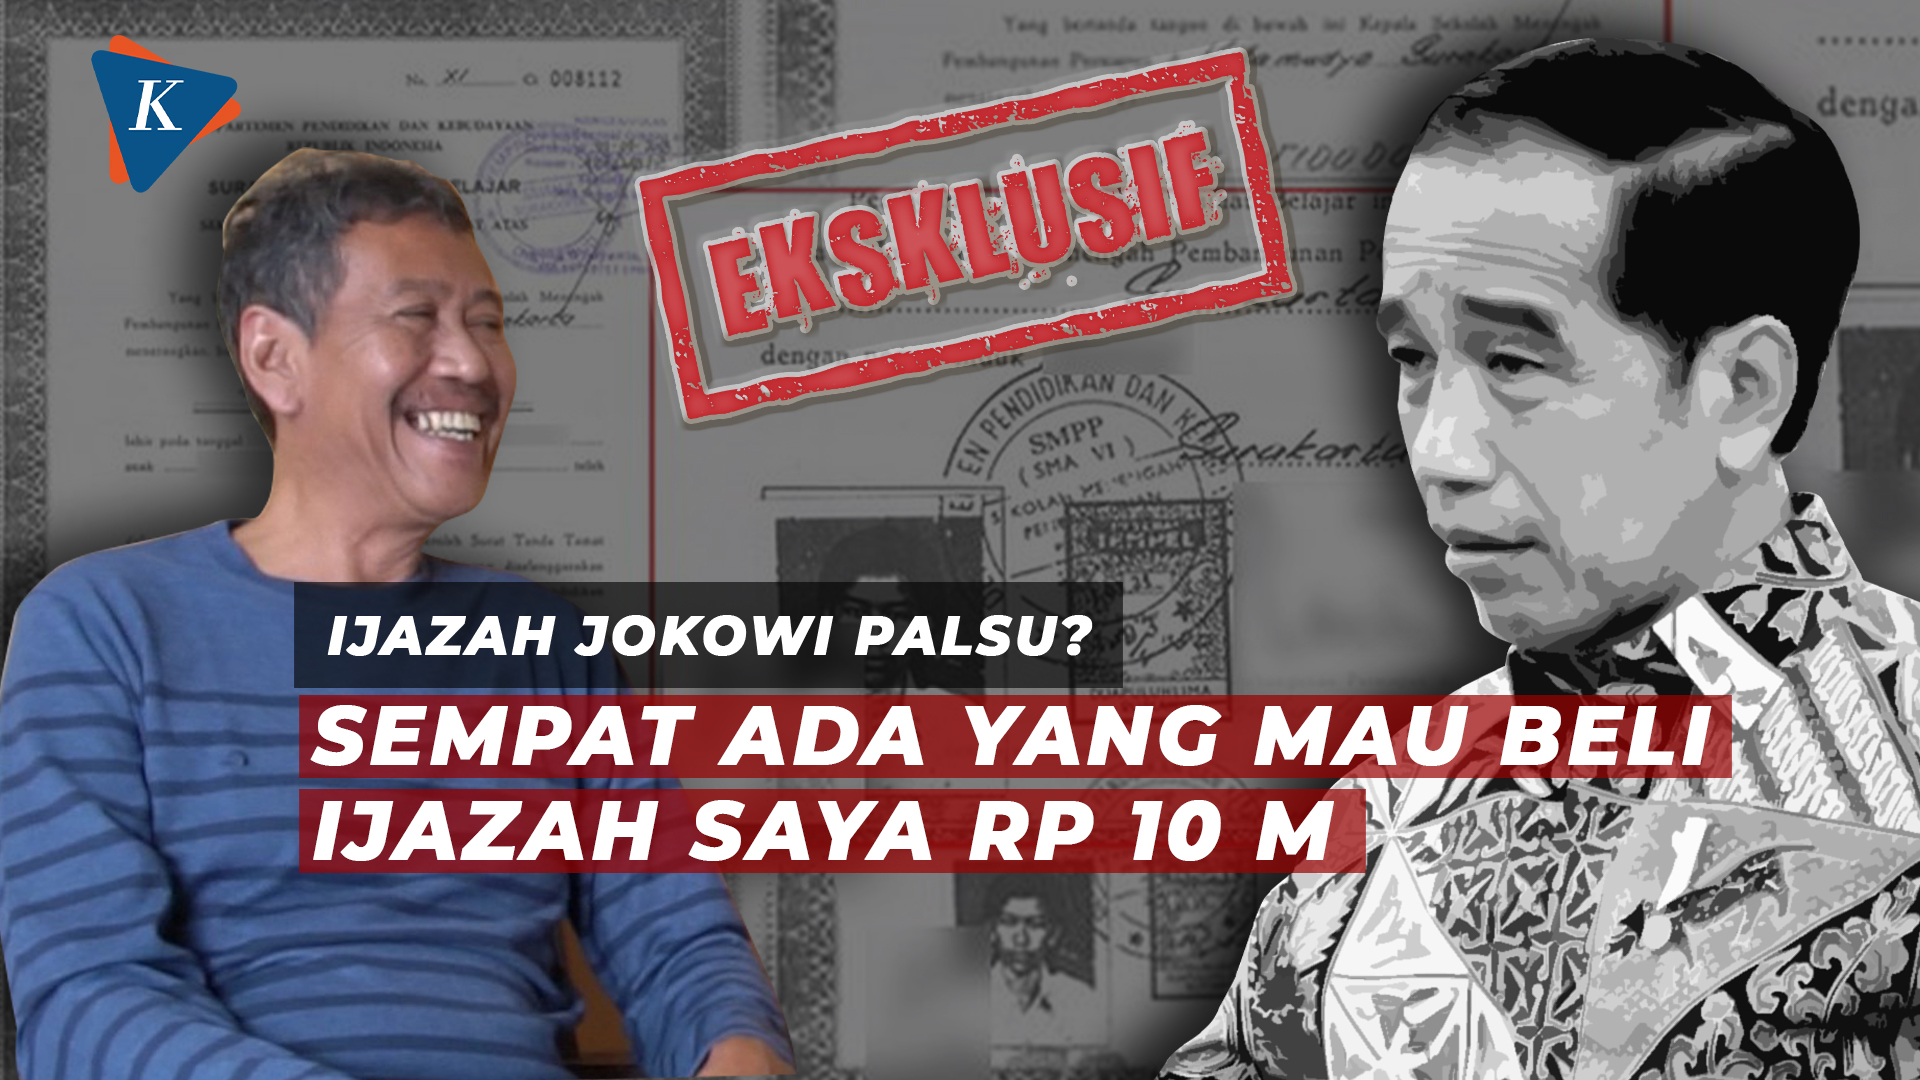 [EKSKLUSIF] Ijazahnya Diisukan Dipakai Jokowi, Ini Pengakuan Djoko Wahyudi